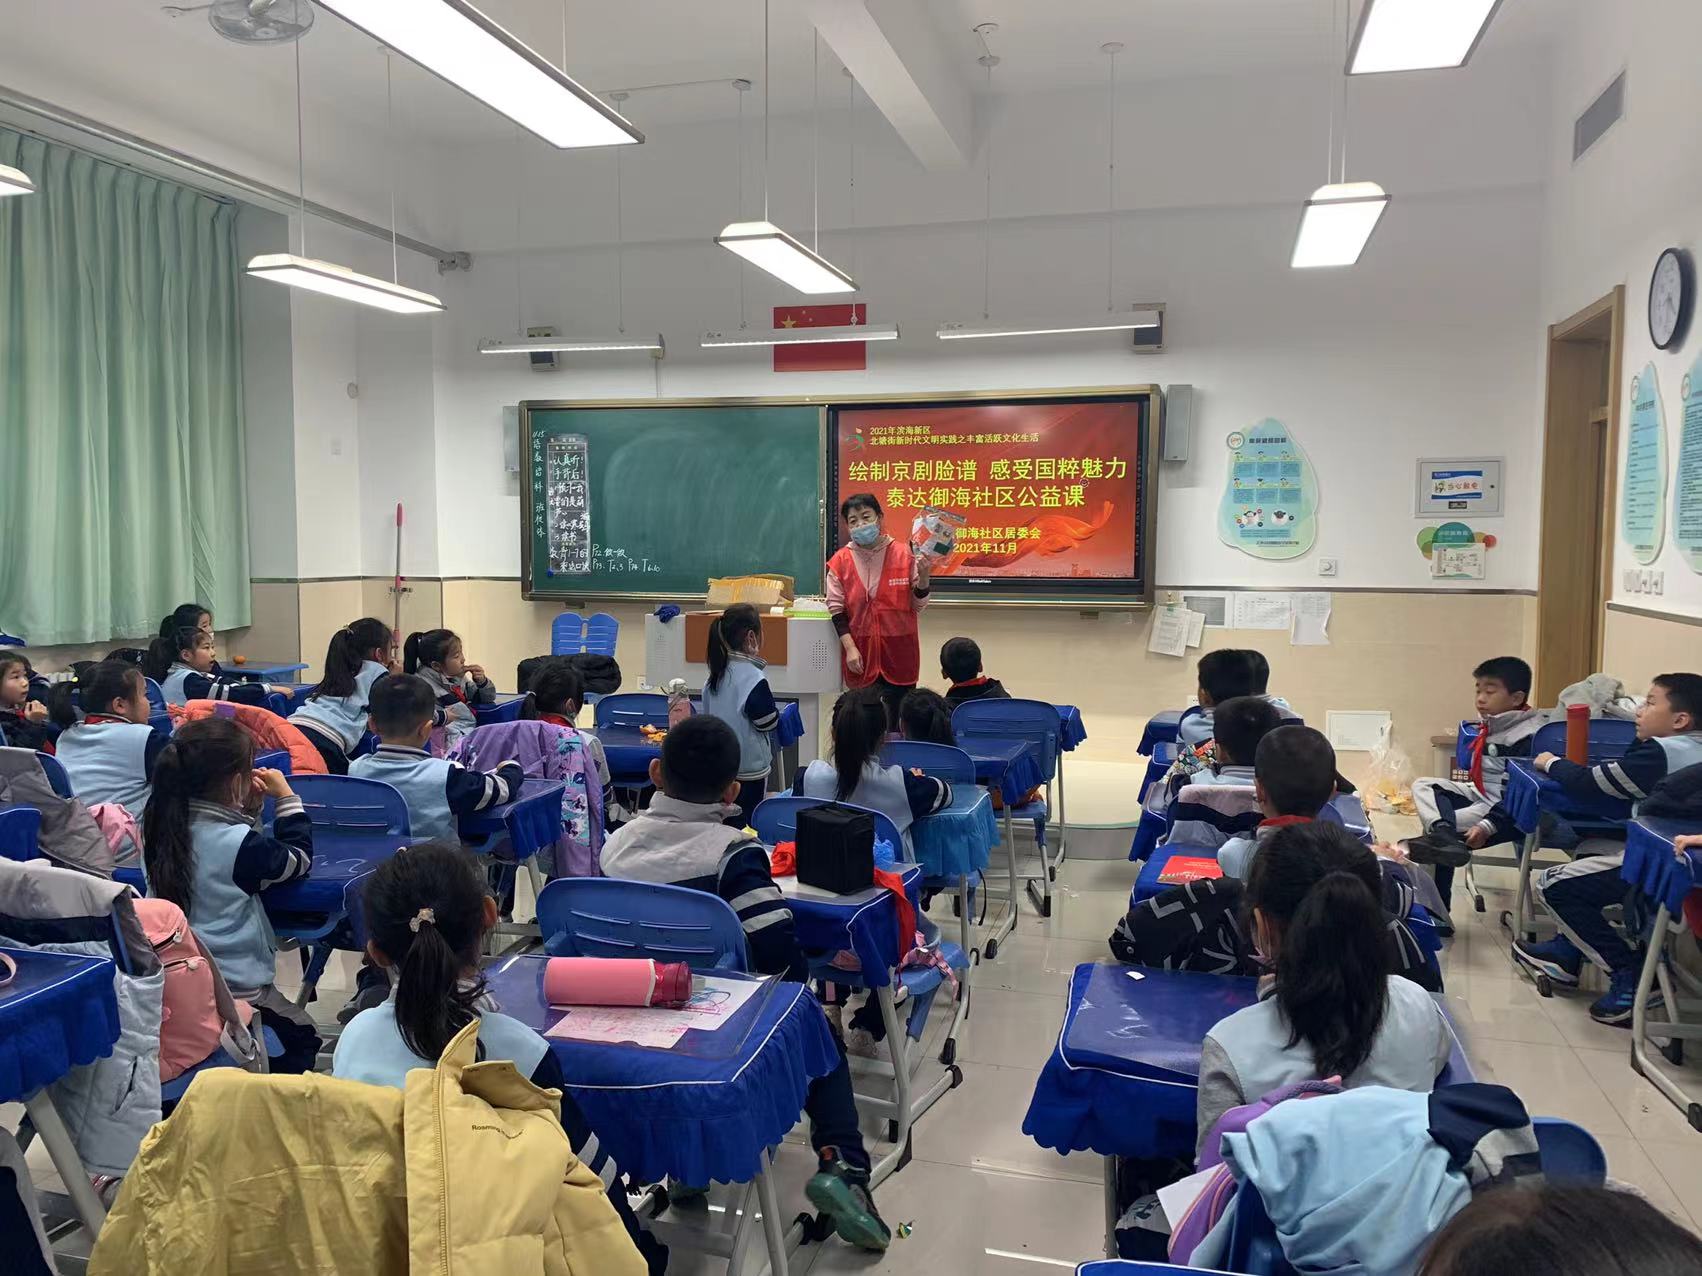 11月15日,北塘街道泰达御海社区联合天津市昆明路小学滨海学校开展了